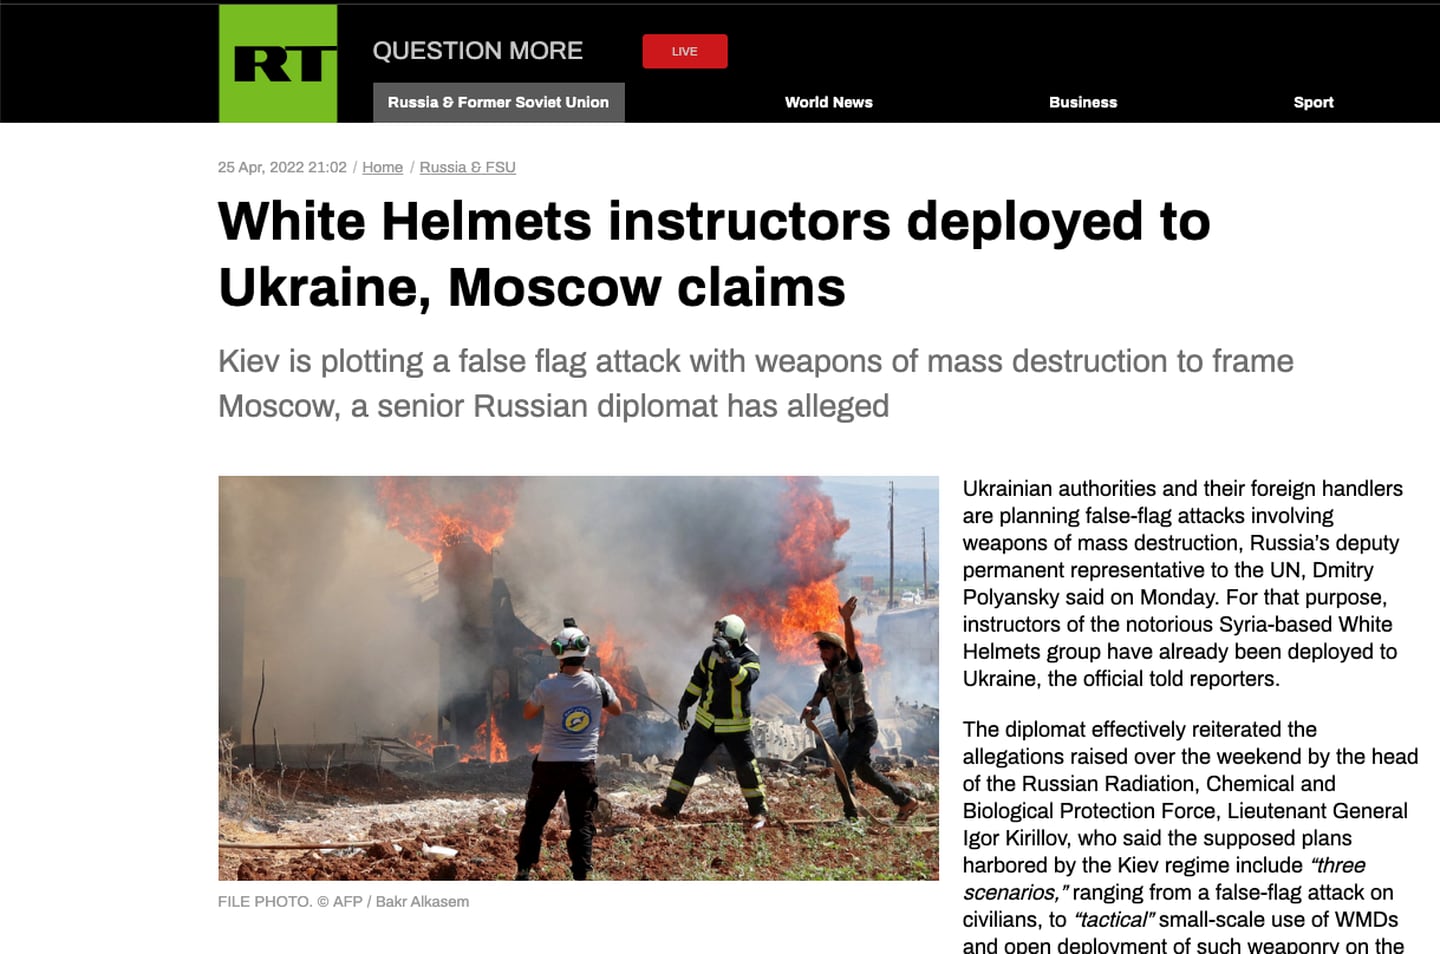 RUSSIA TODAY: Den russiske statskanalen RT viderebringer anklager om at De hvite hjelmene er i Ukraina for å konstruere «falsk flagg»-operasjoner mot Russland.